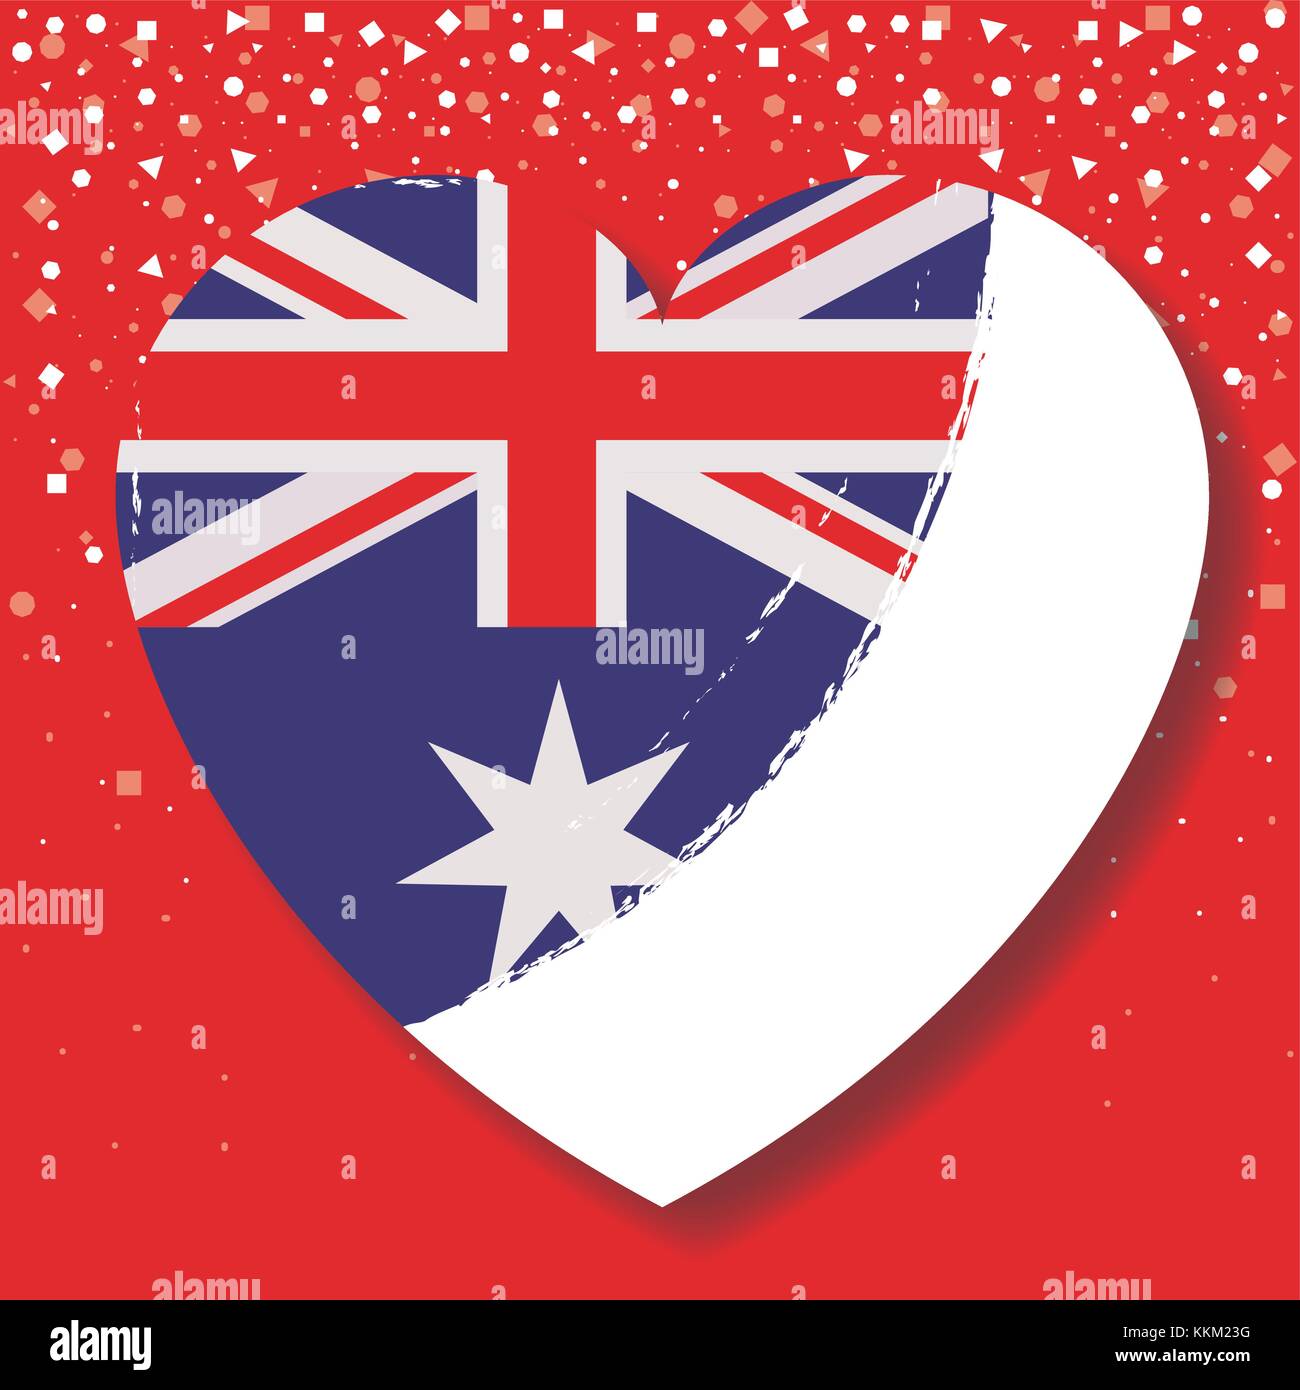 Hình ảnh lá cờ Australia trên trái tim sẽ khiến bạn cảm nhận được tình yêu và sự gắn bó với đất nước này.